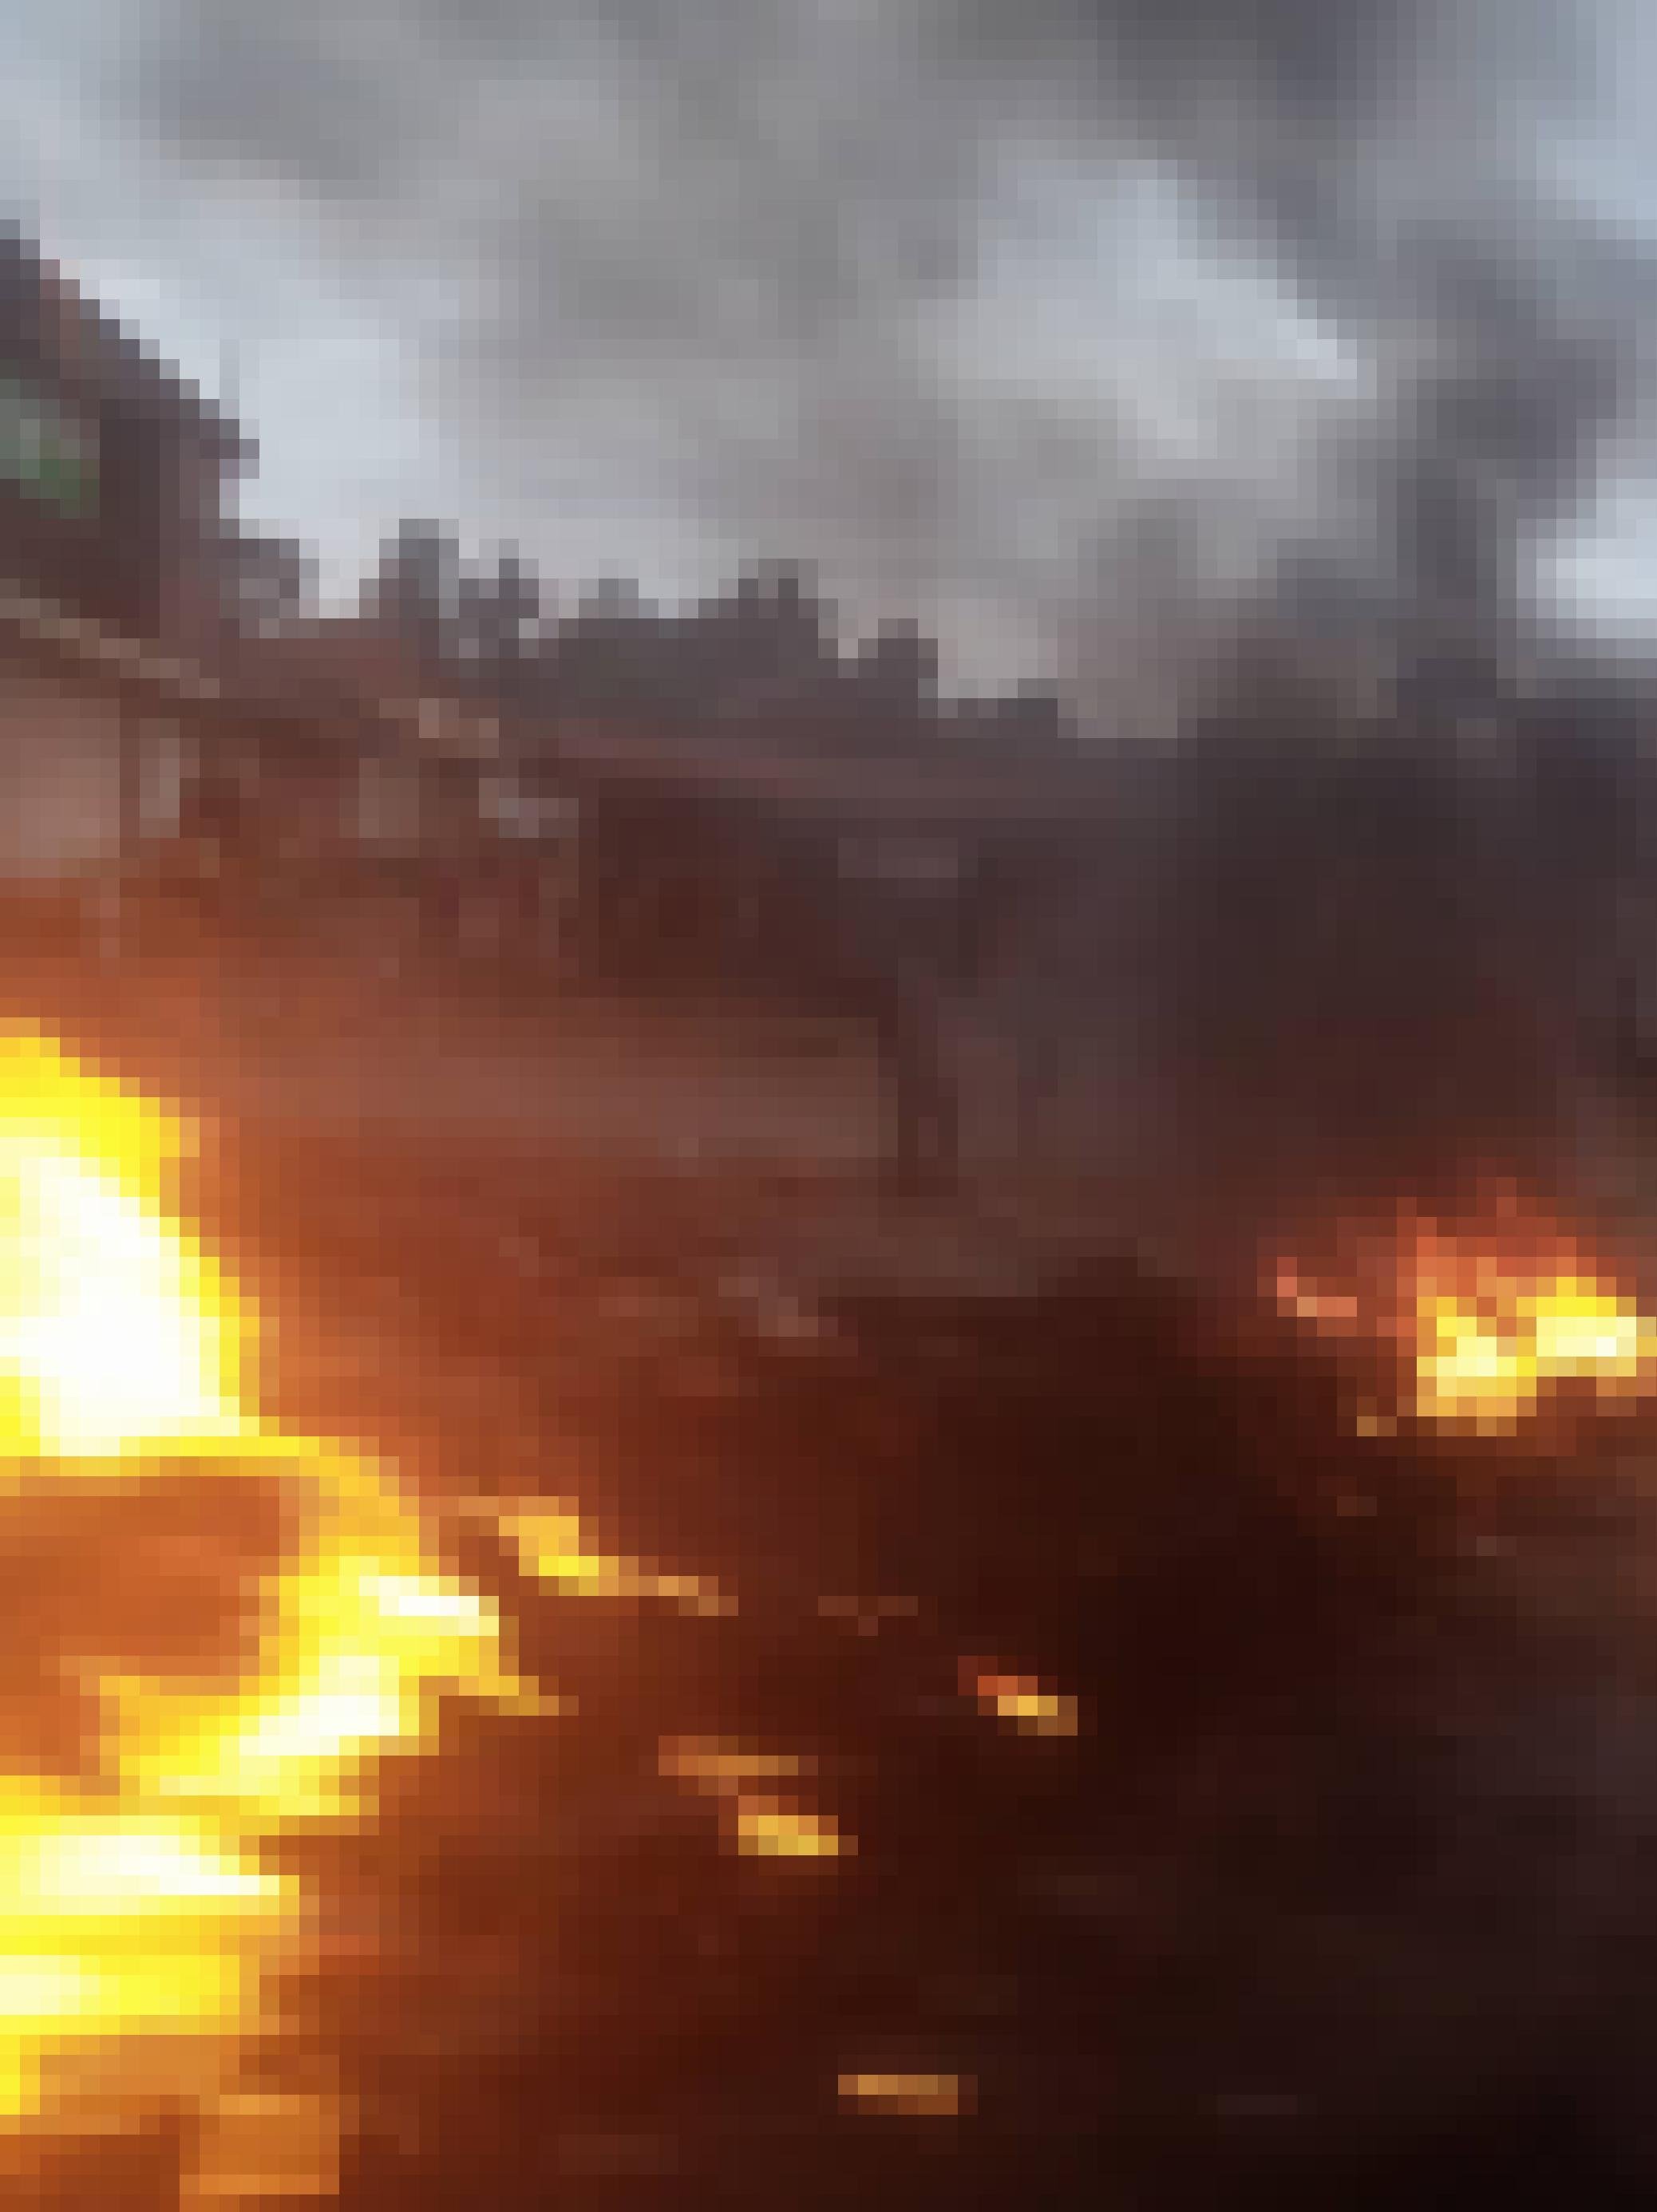 Zu sehen ist eine Straßenblockade aus brennenden Autoreifen, Rauch hängt in der Luft. Das Foto ist unscharf, was den Eindruck von Aktion, Bewegung und Gefahr unterstreicht.